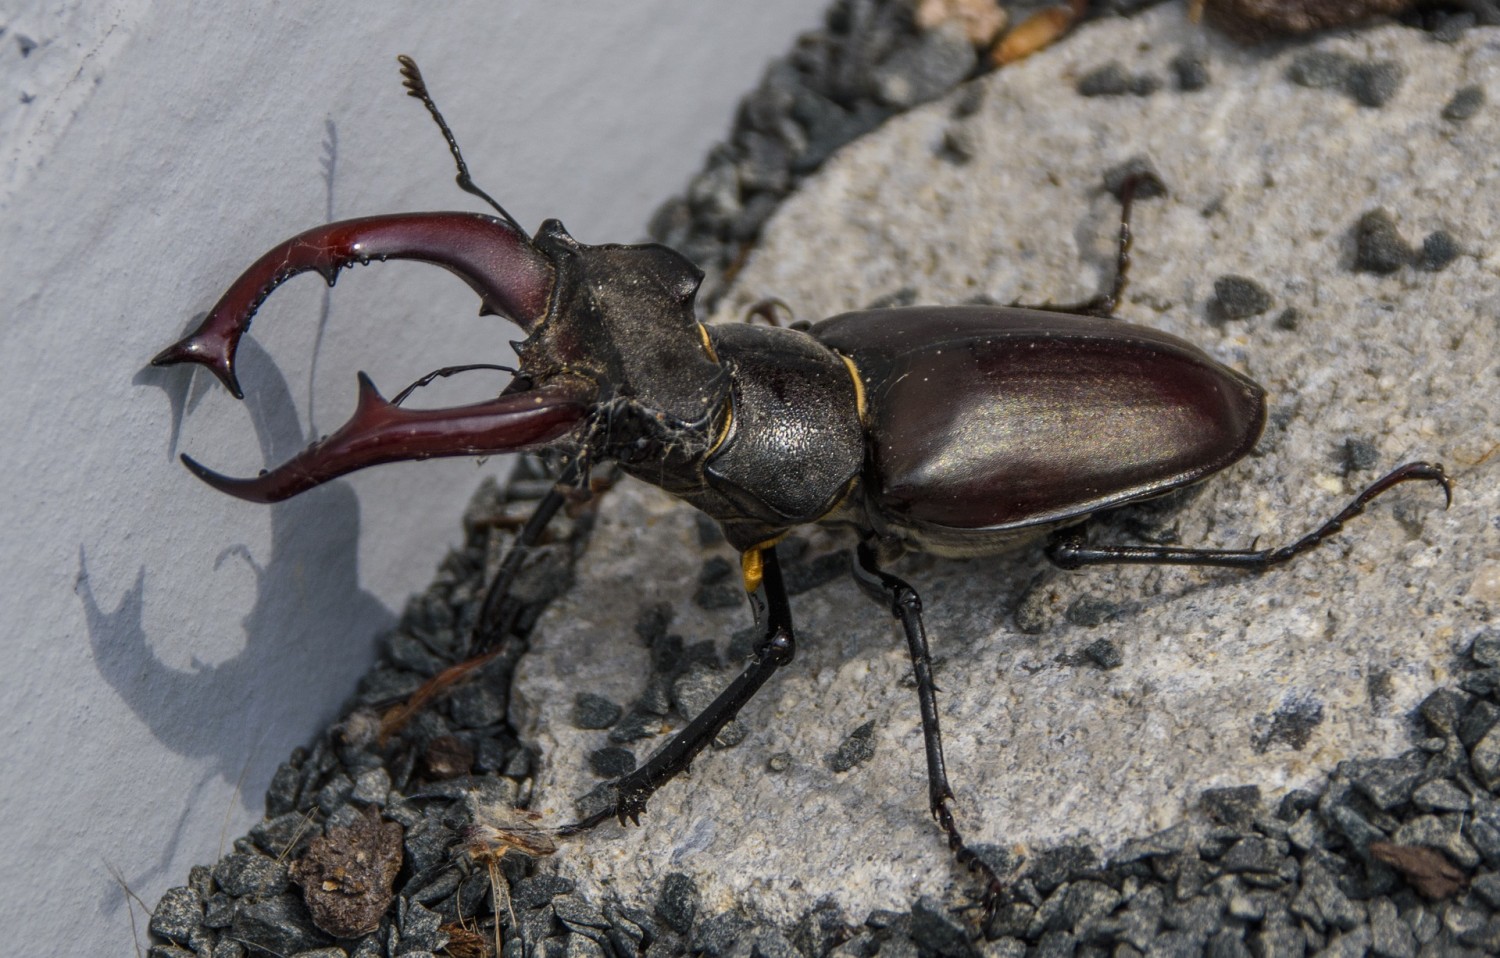 202206191125_stag-beetle-g5c1662d89_1920.jpg (1500×958)